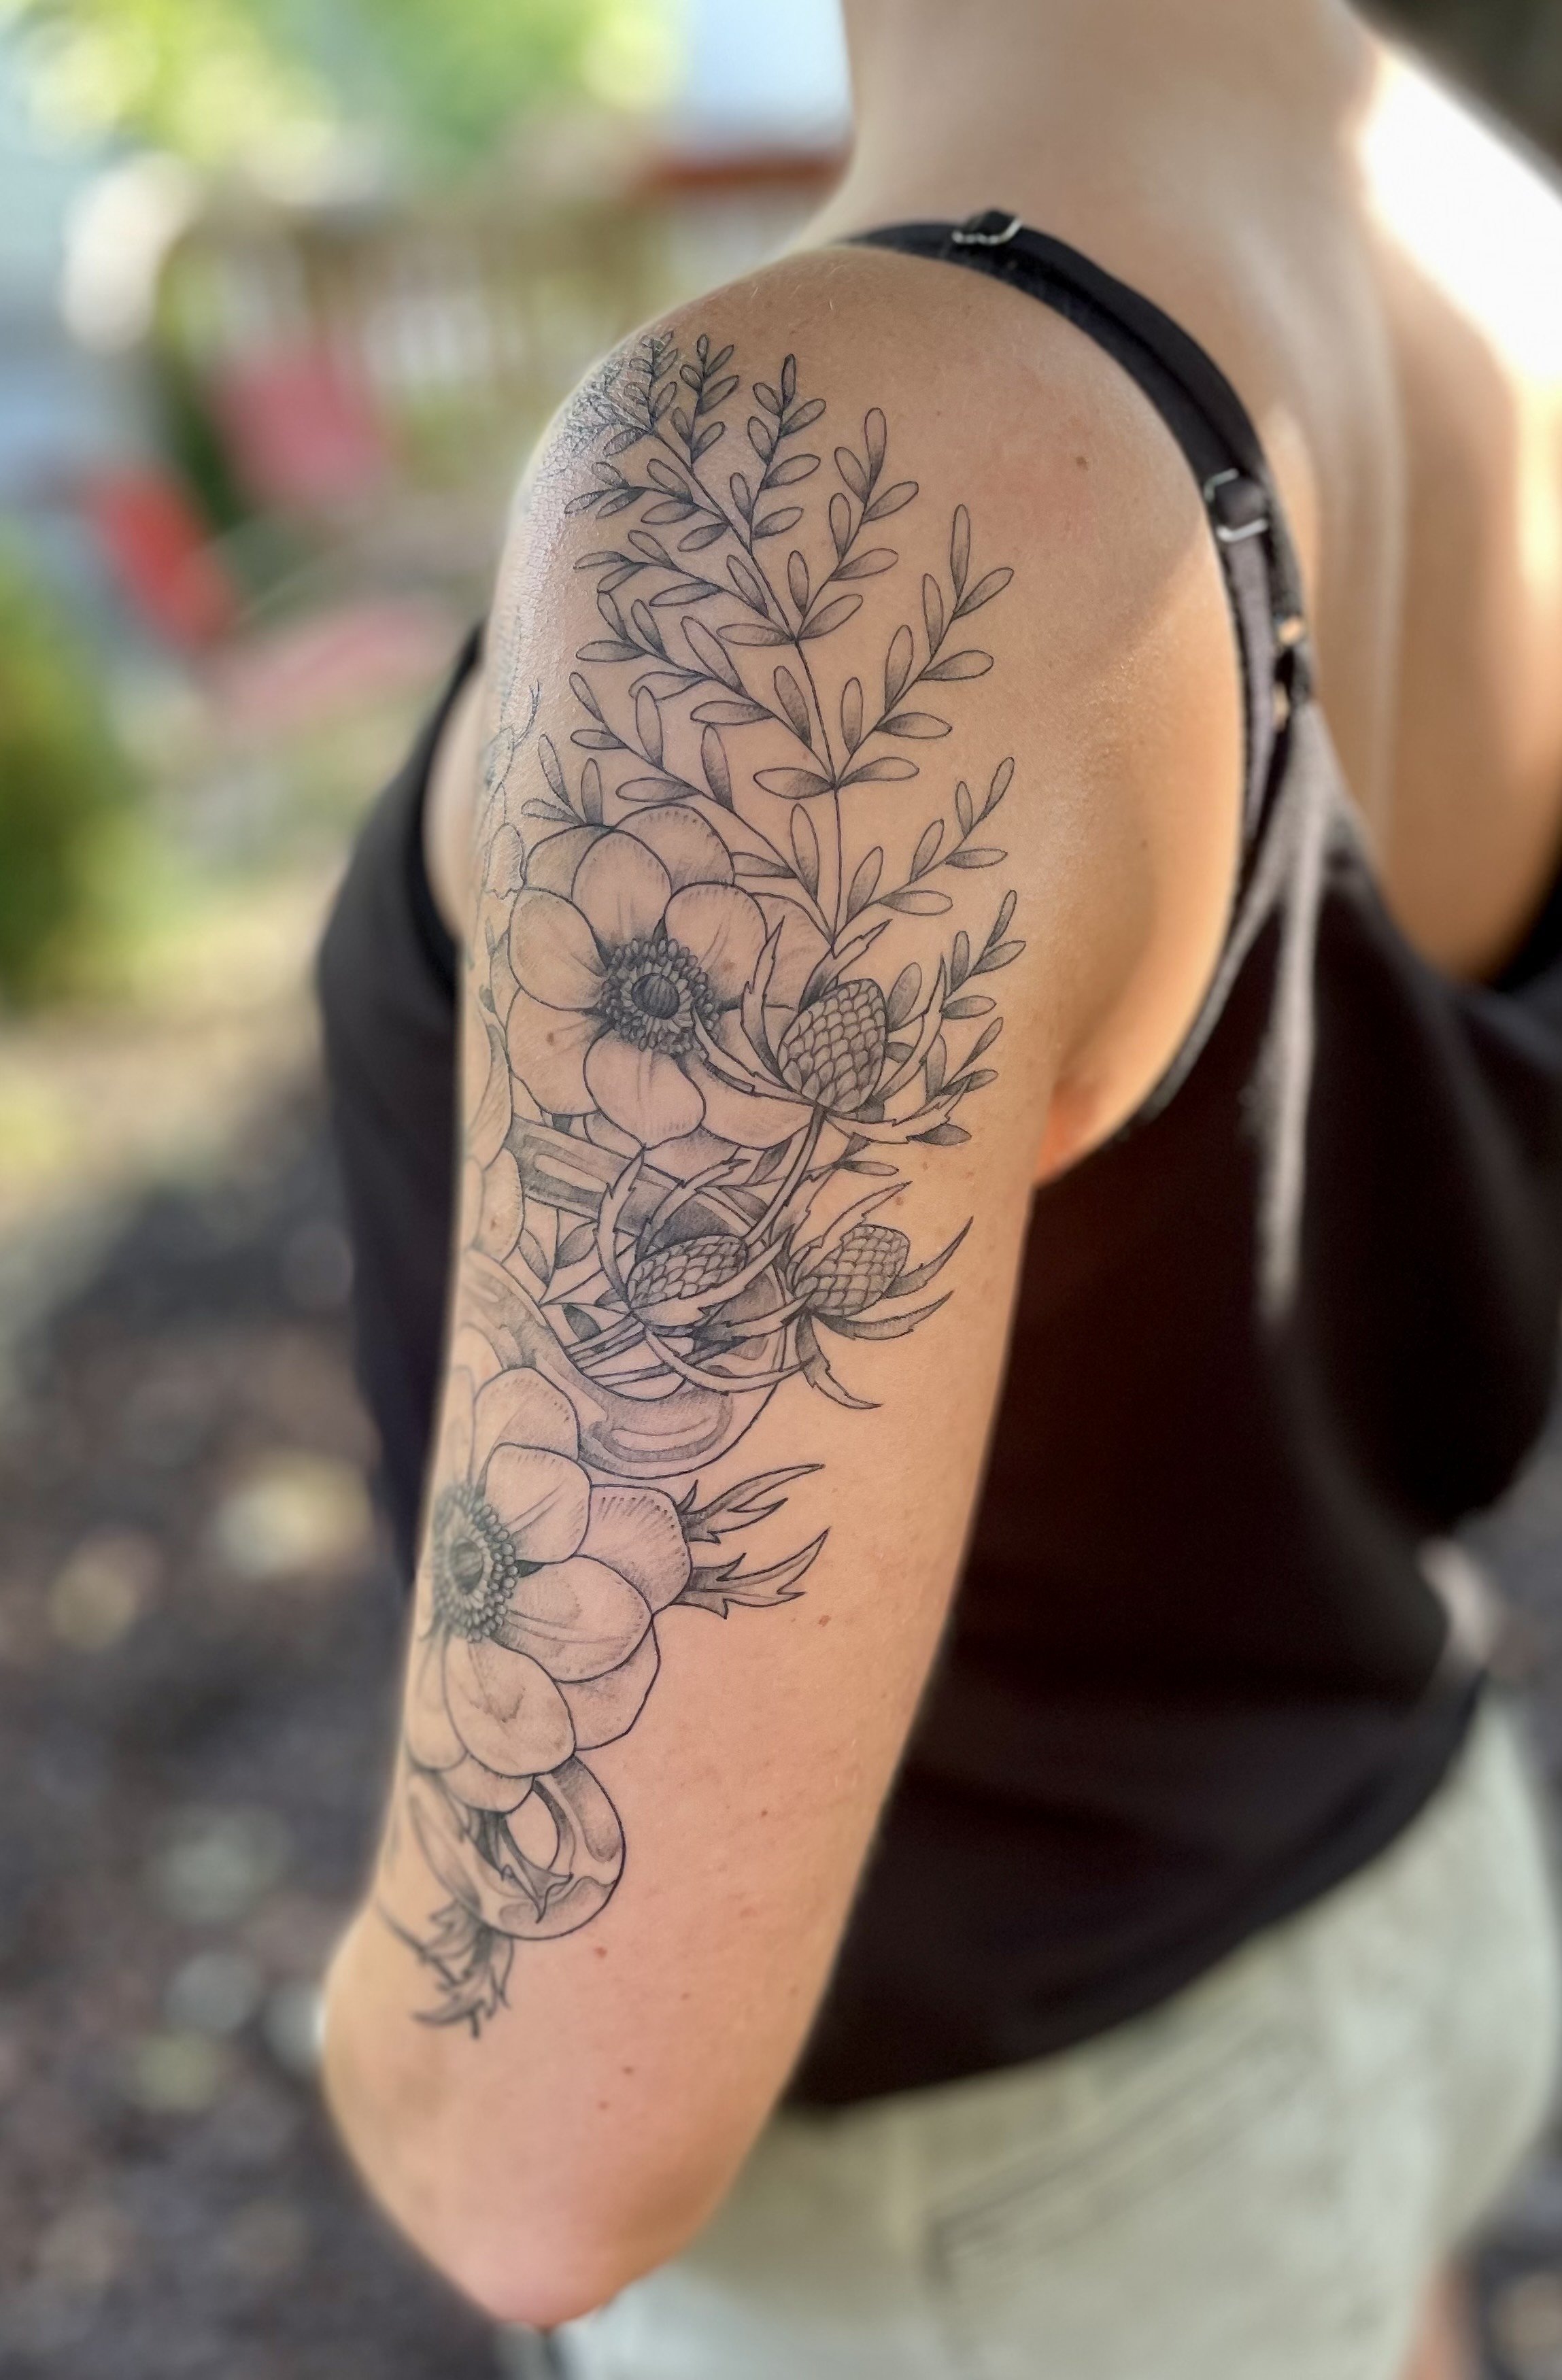 Erin G Minneapolis - Henna Tattoo Artists in Minnesota